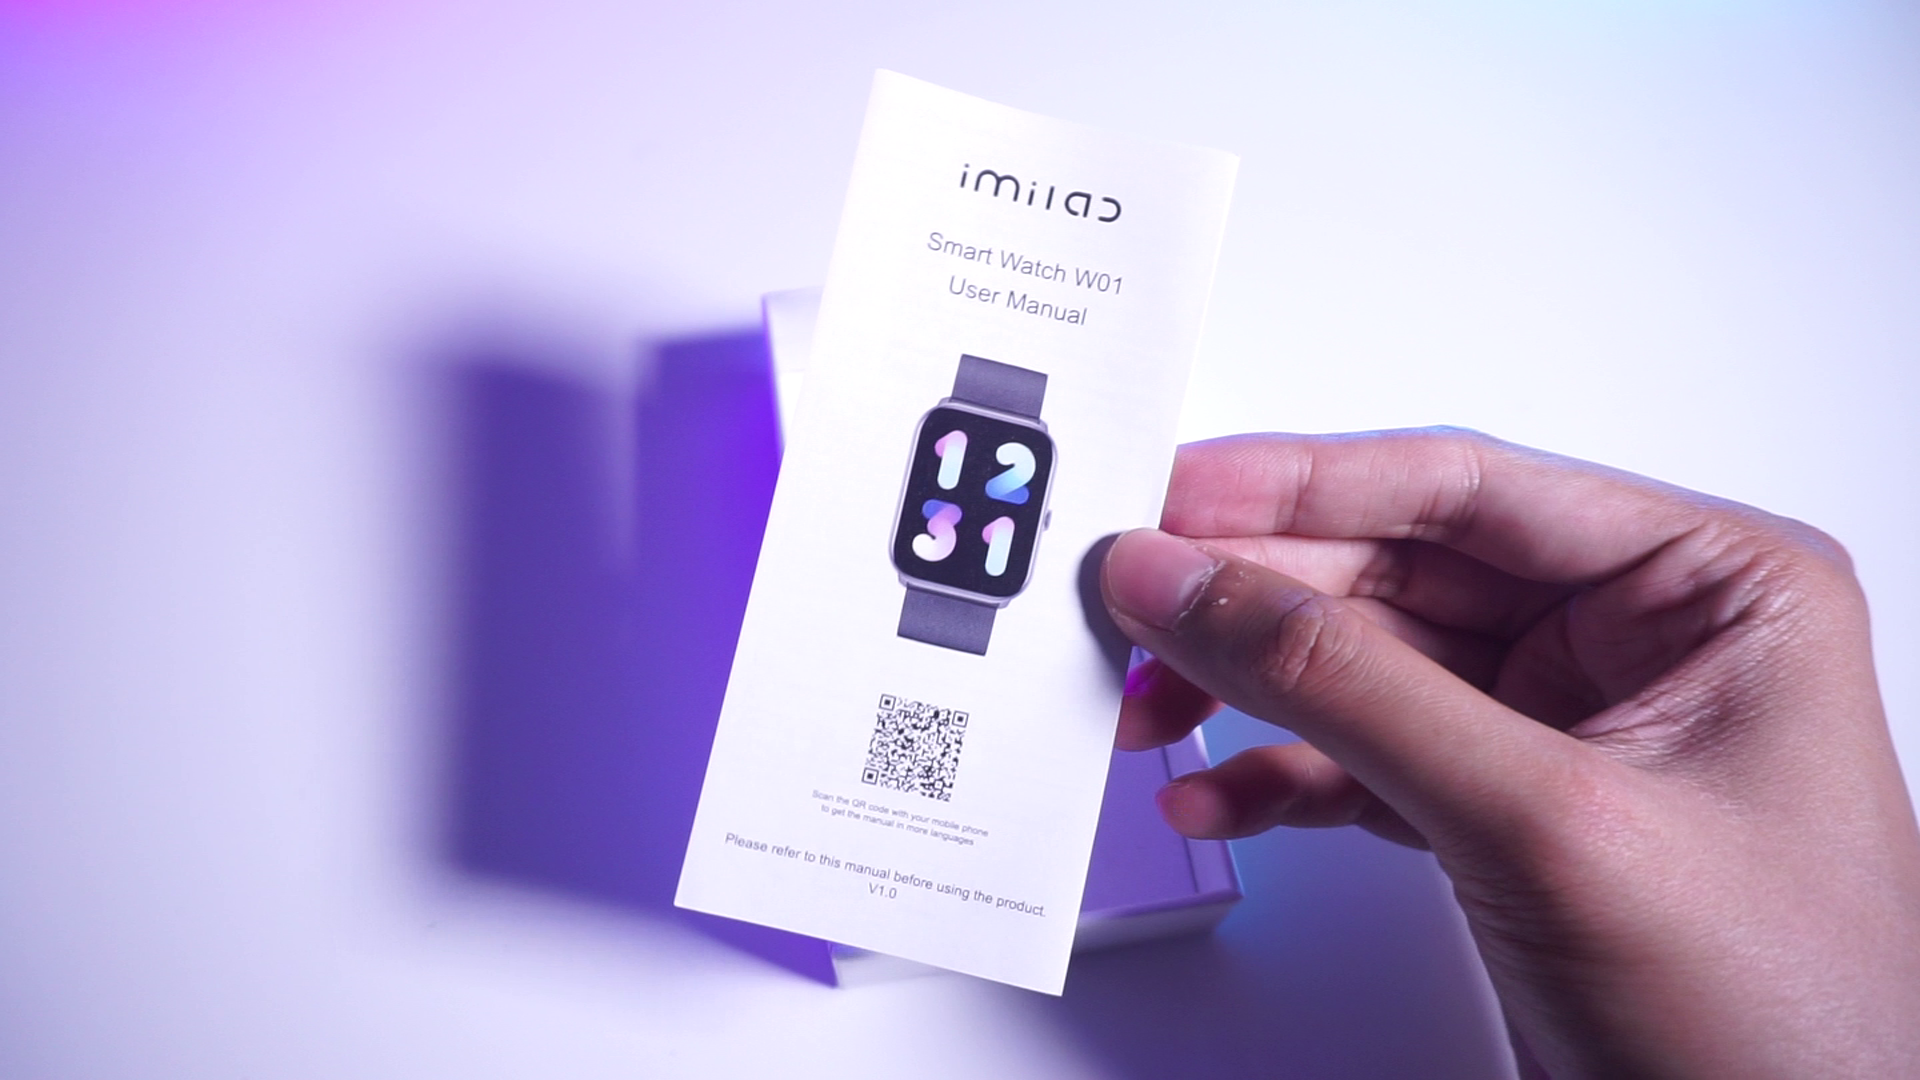 IMILAB W01 smartwatch